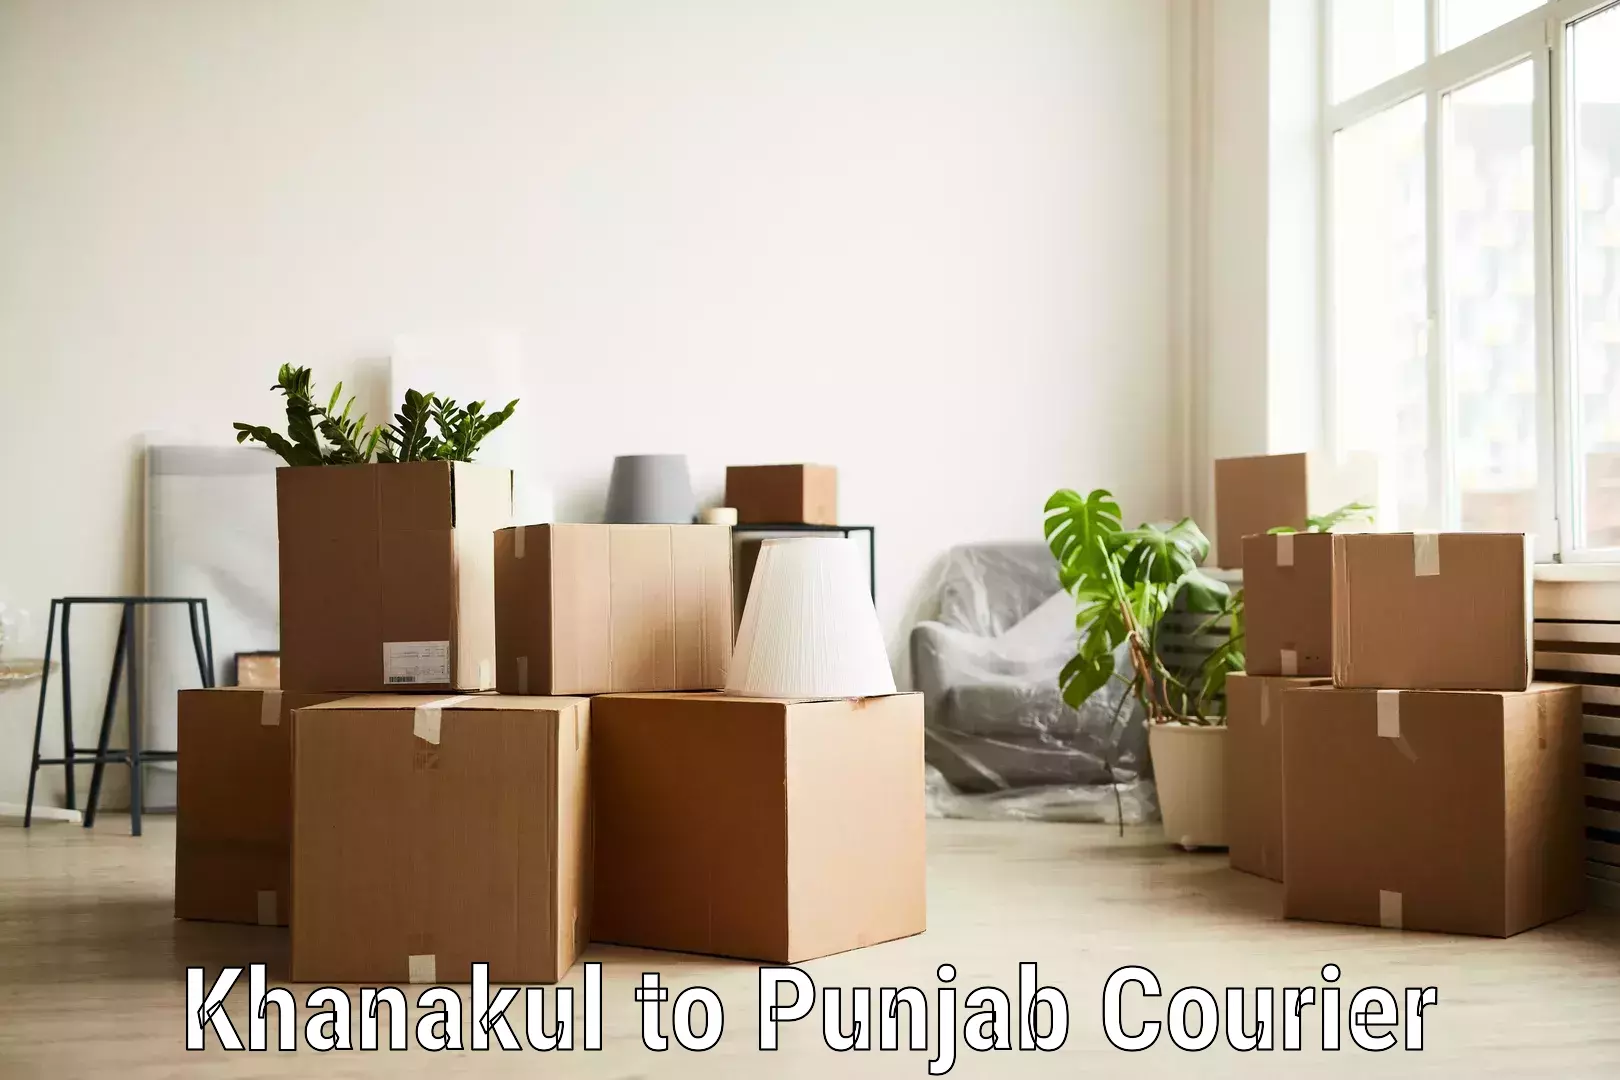 Quick parcel dispatch Khanakul to Punjab